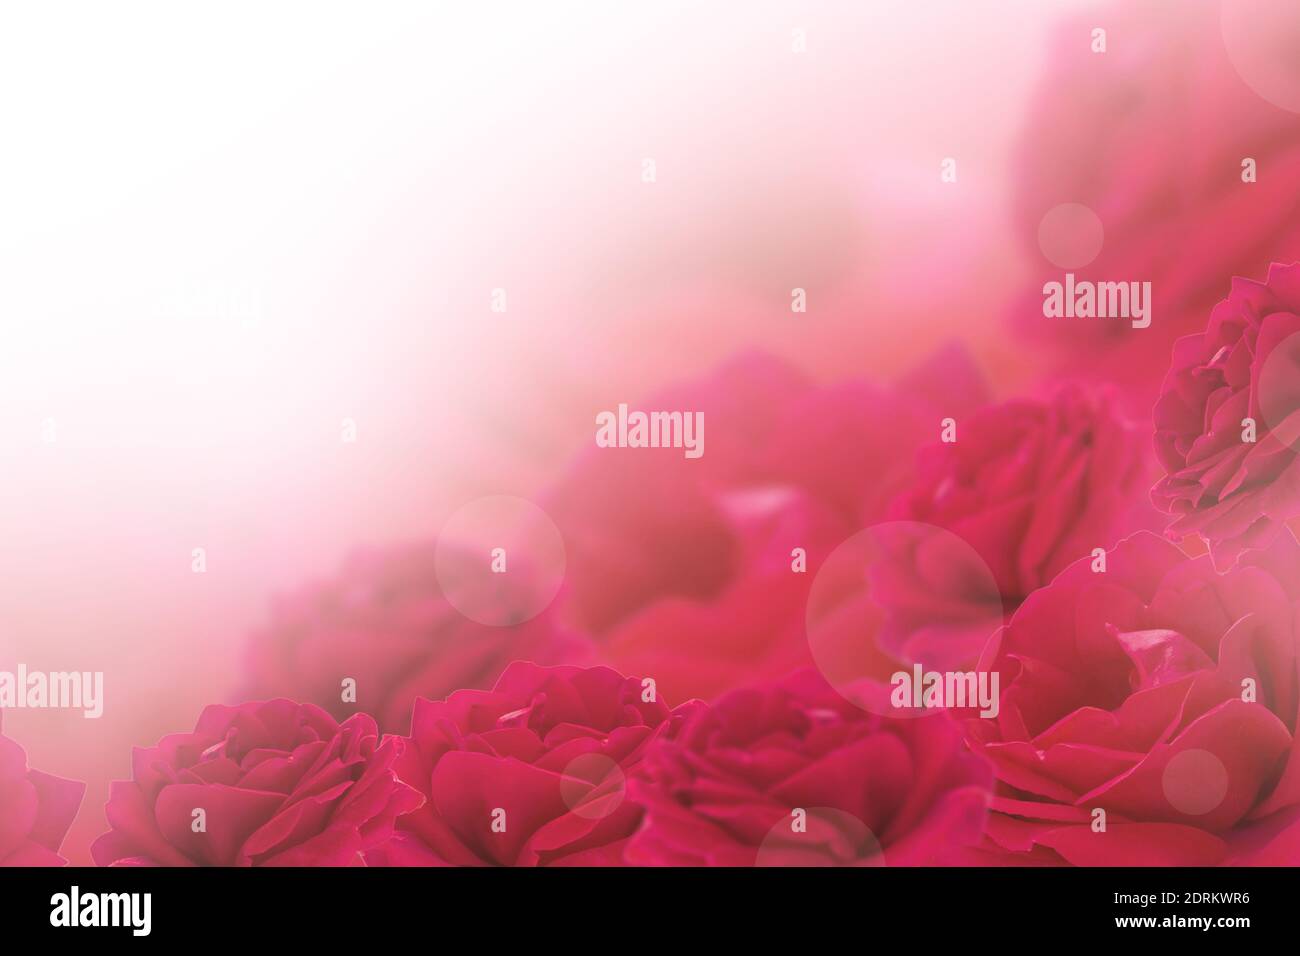 Carte De Vœux A Fleurs Rouges Fleurs Roses Pastel Et Douce Concept De Fete Des Meres De Saint Valentin De Fete D Anniversaire Carte Postale Copier Photo Stock Alamy